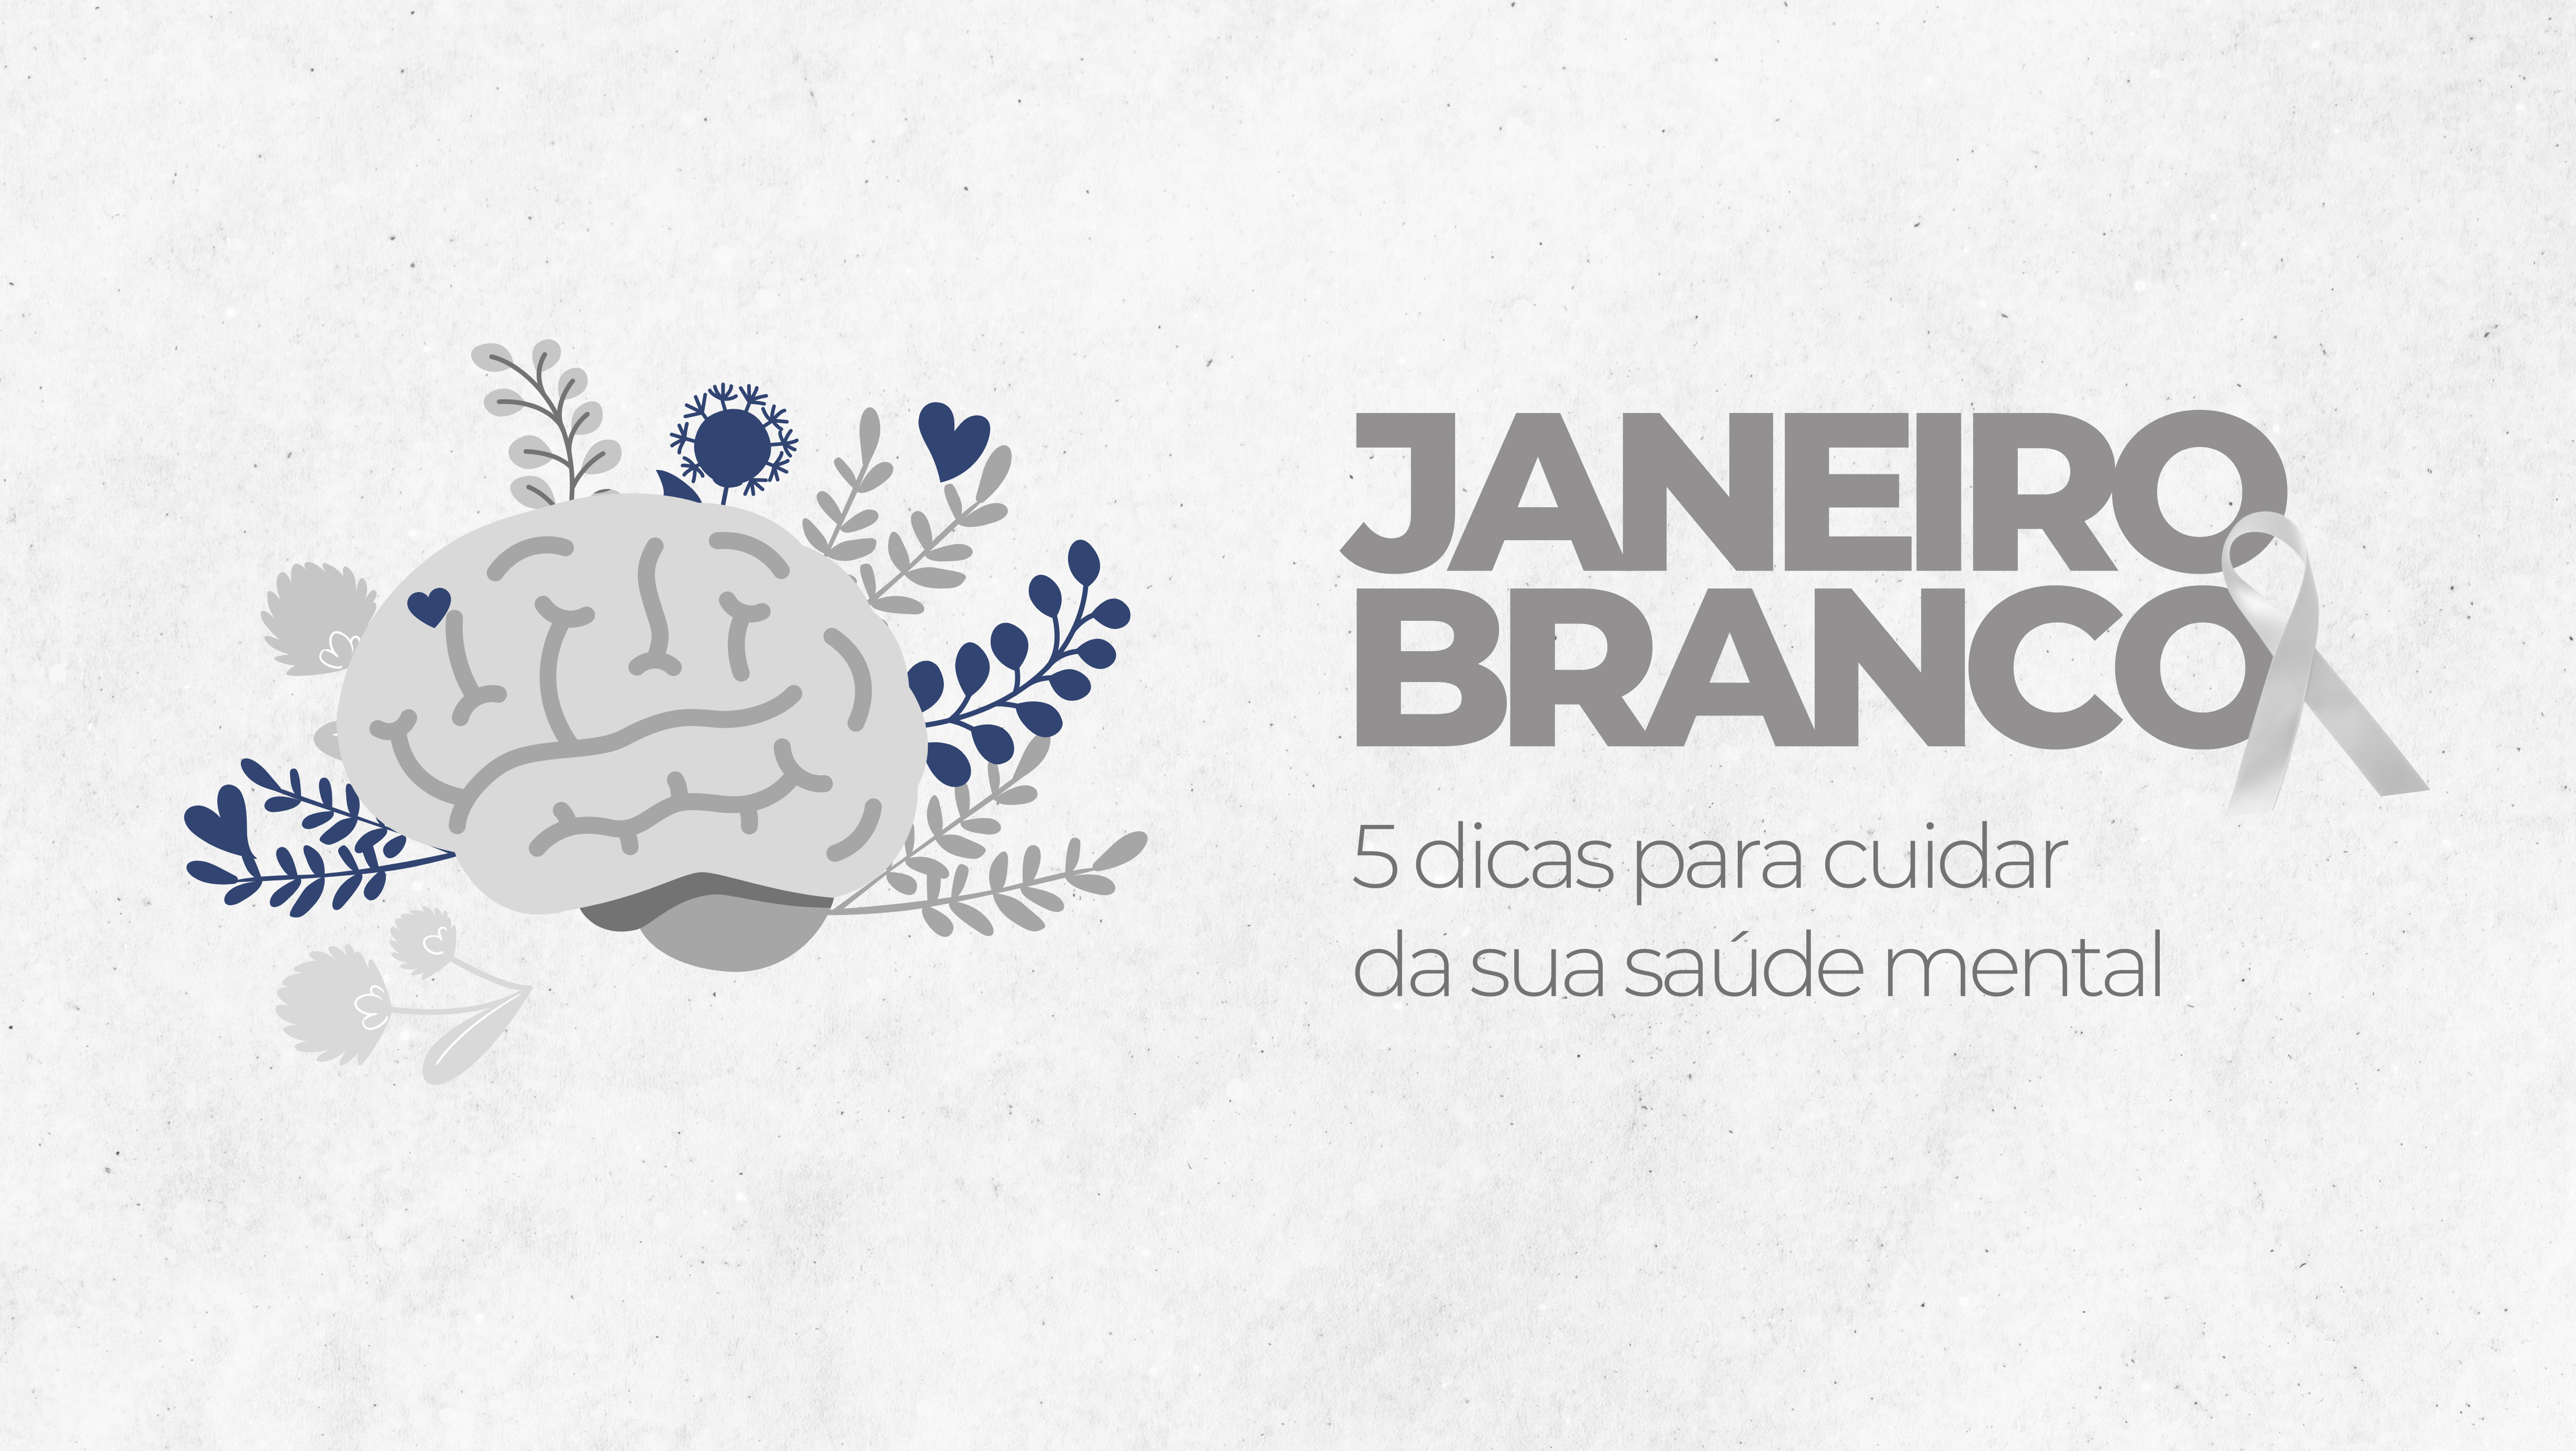 Janeiro Branco: Campanha "A Vida Pede Equilíbrio"